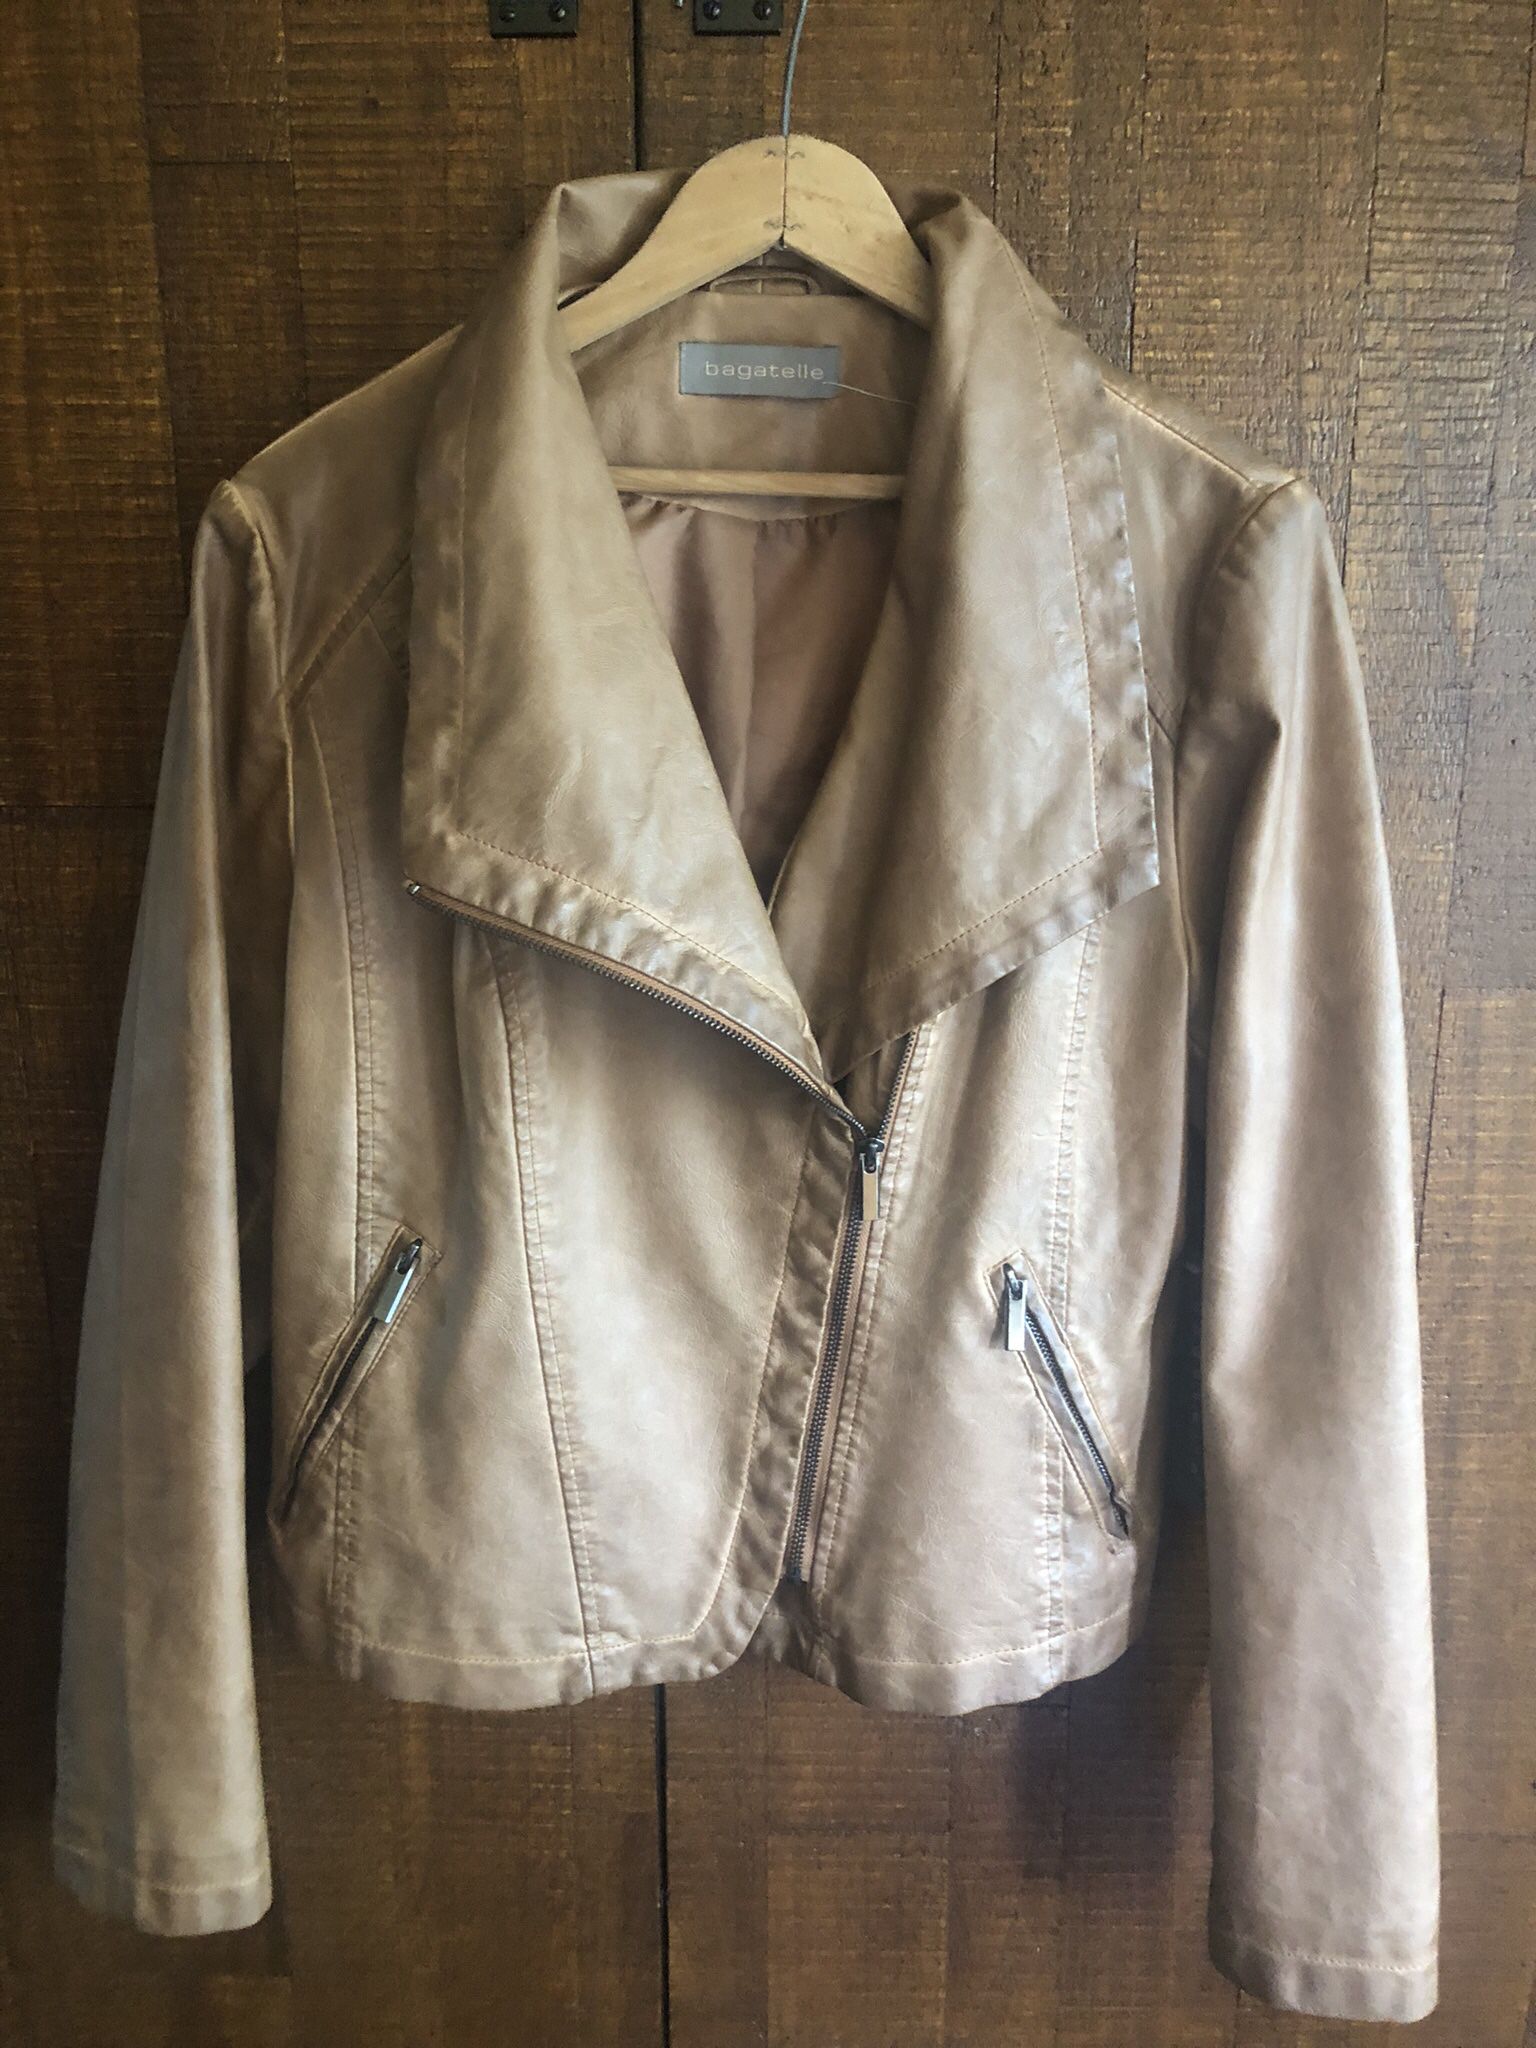 Bogatelle Women Leather Jacket, L